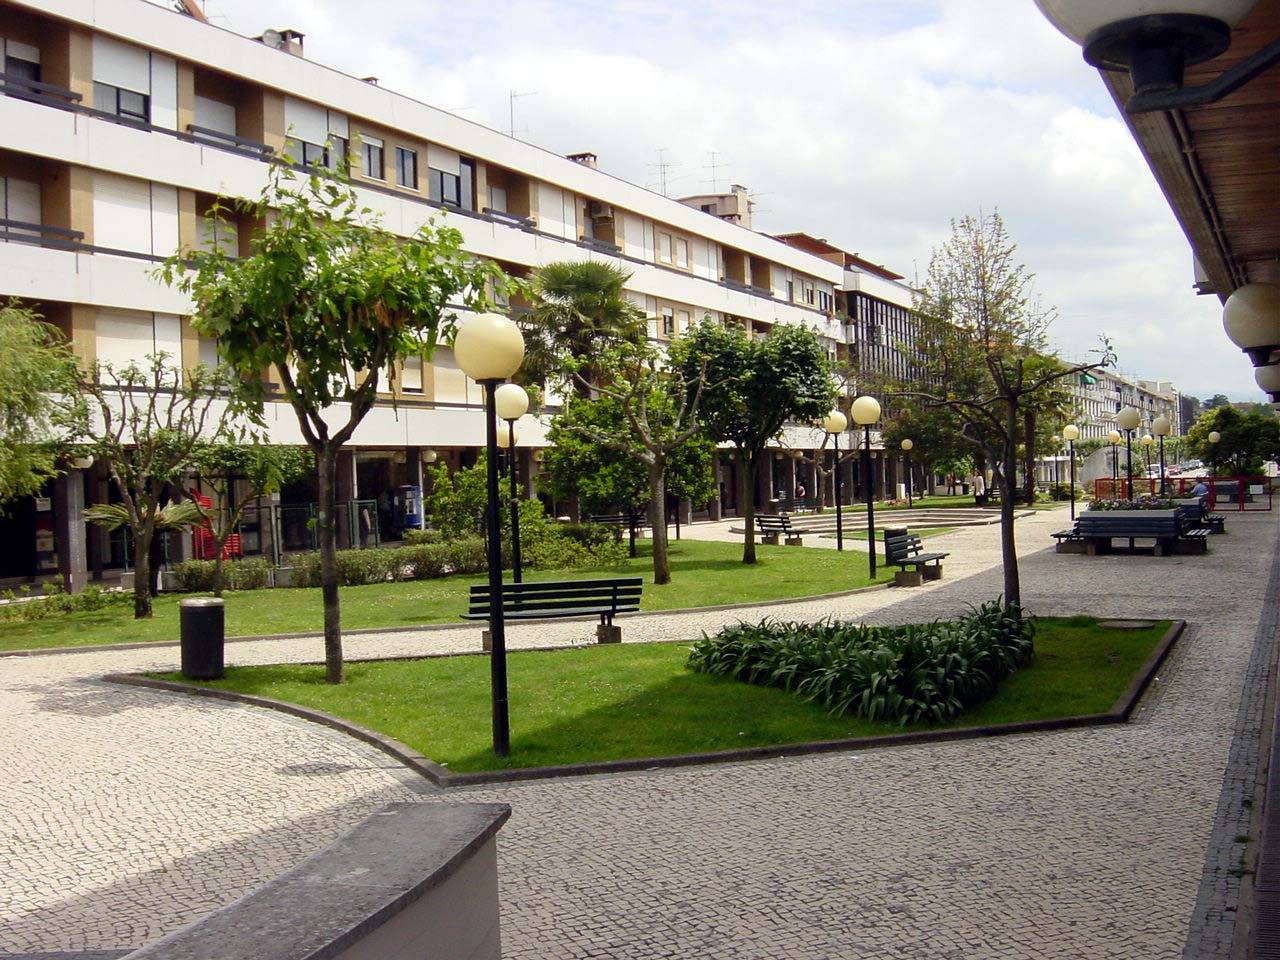 Praça do Município de Águeda